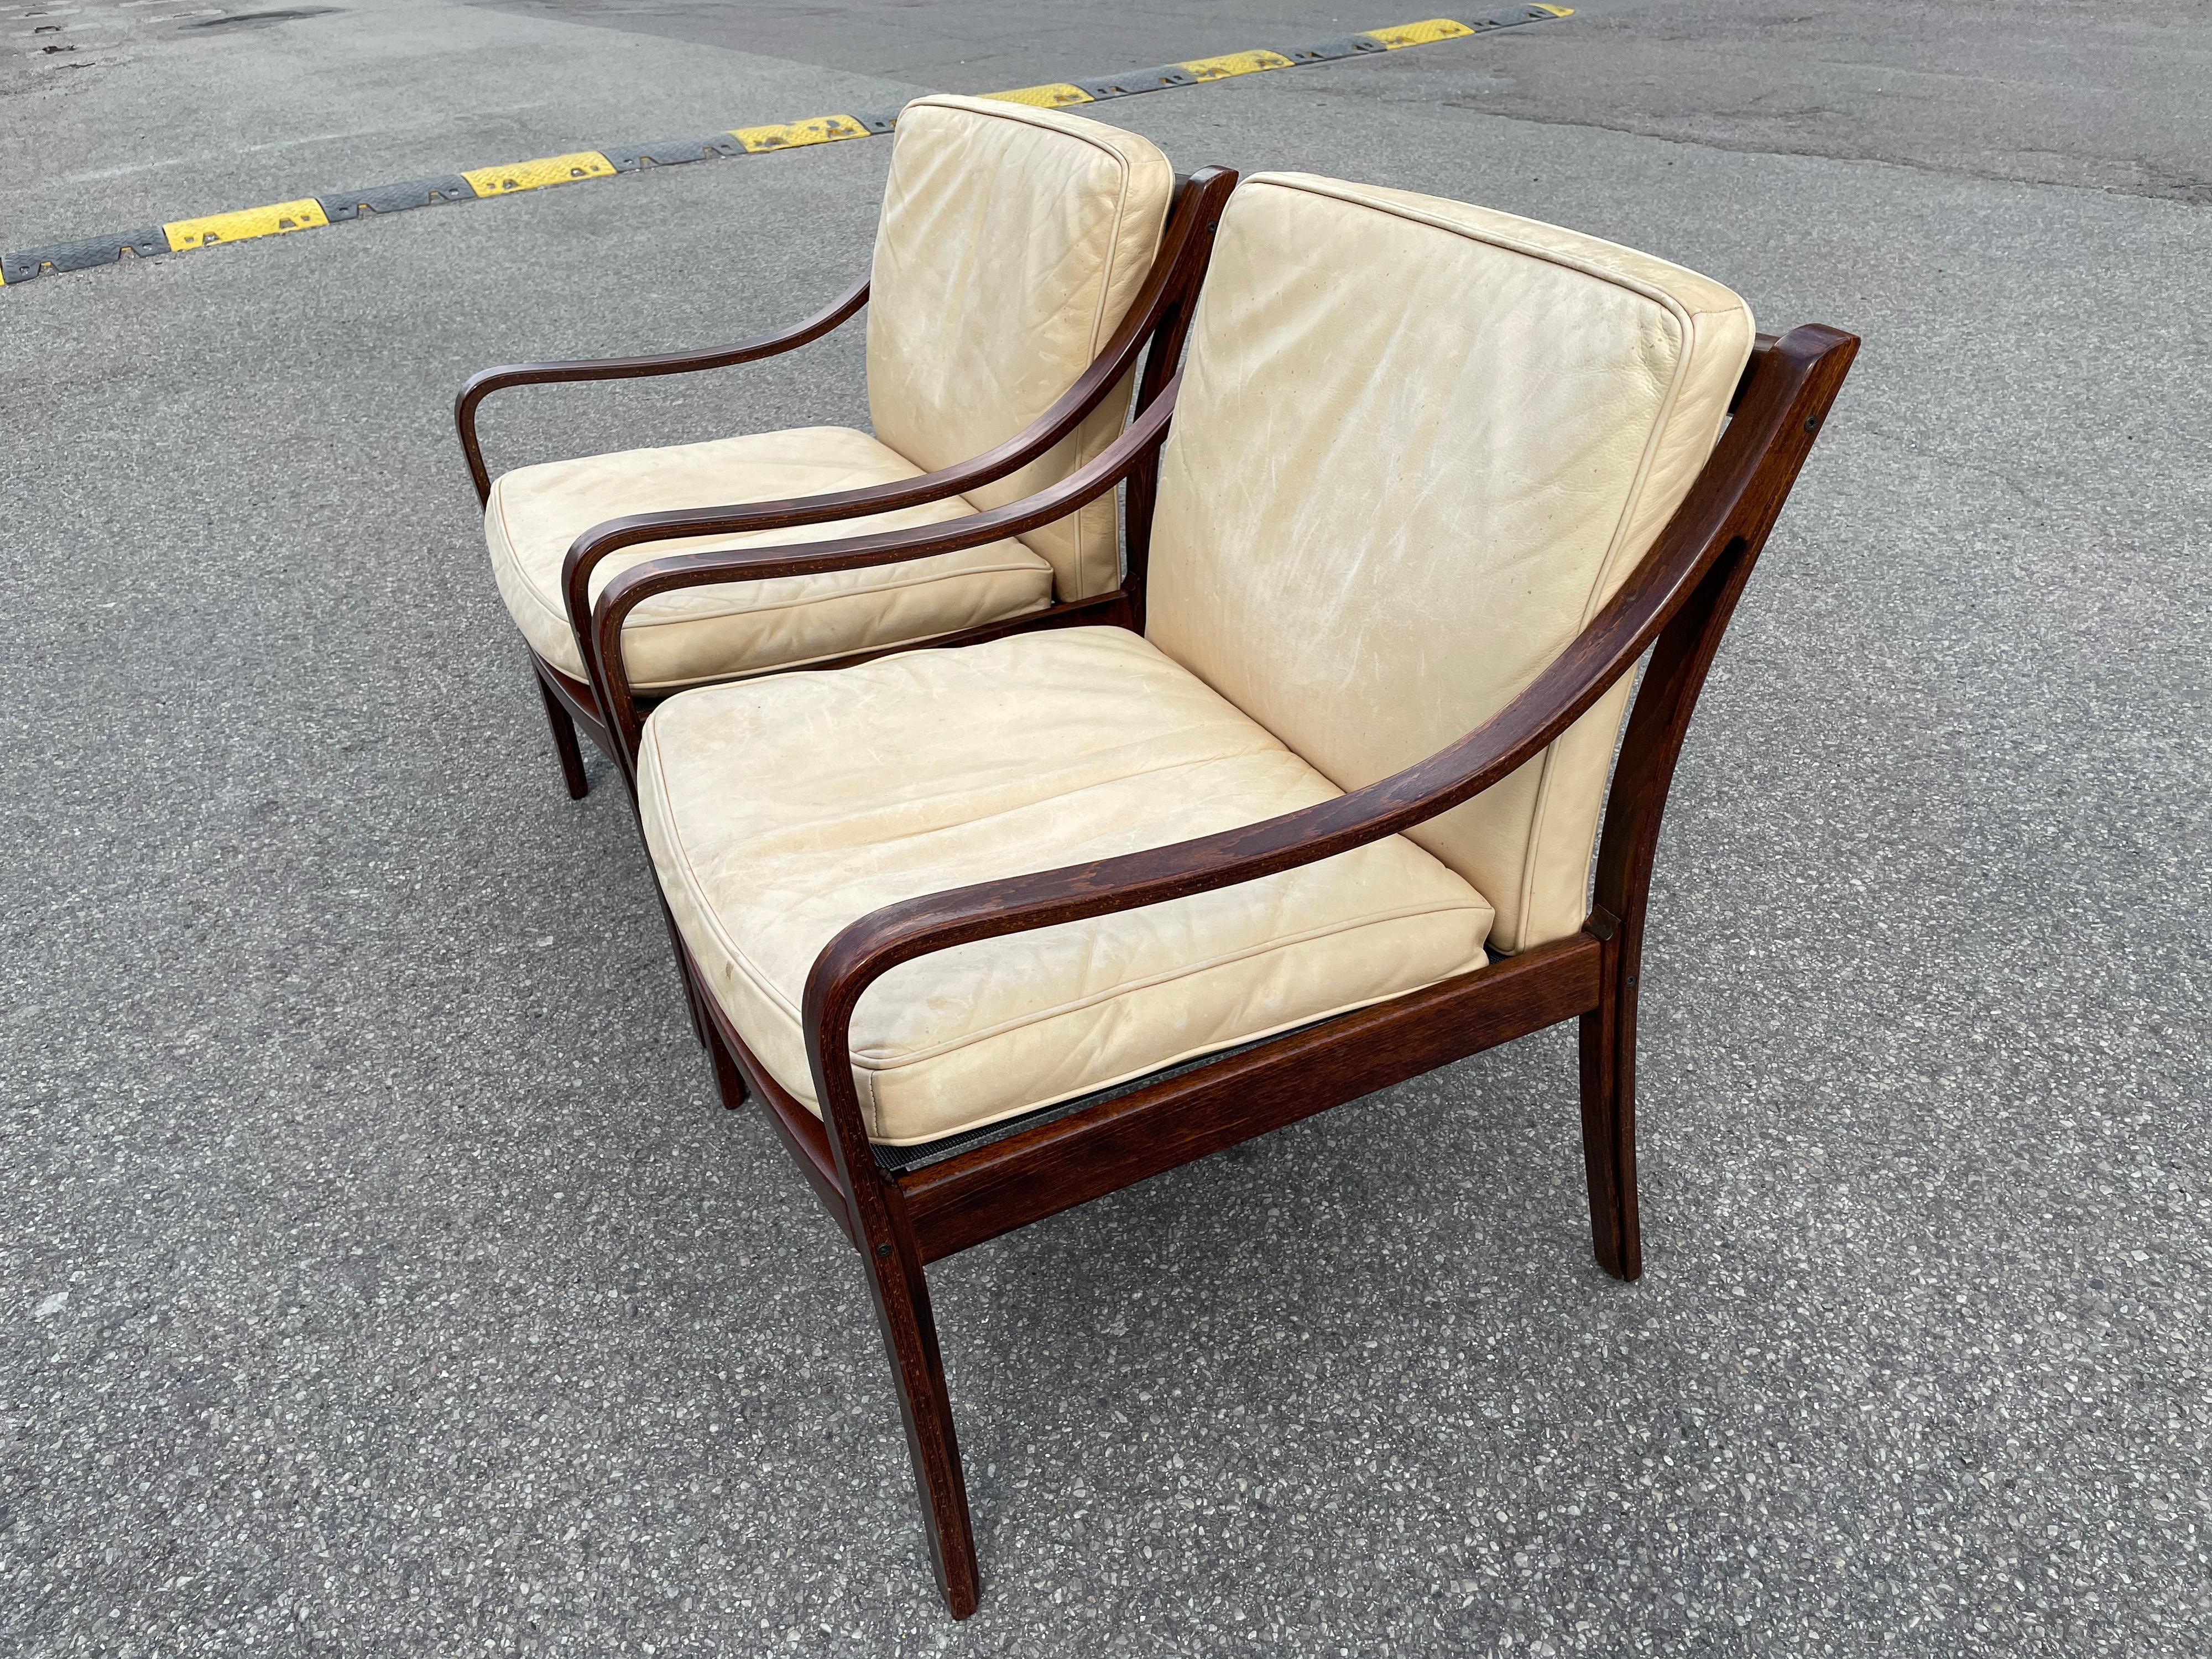 Elegante und außerordentlich seltene Sessel des Modells 108, entworfen von Fredrik Kayser für Vatne Möbler, ca. 1968.
Das Gestell der Stühle ist aus wunderschönem Palisanderholz gefertigt.

Dieser Stuhl ist wahrscheinlich Fredricks beste Arbeit